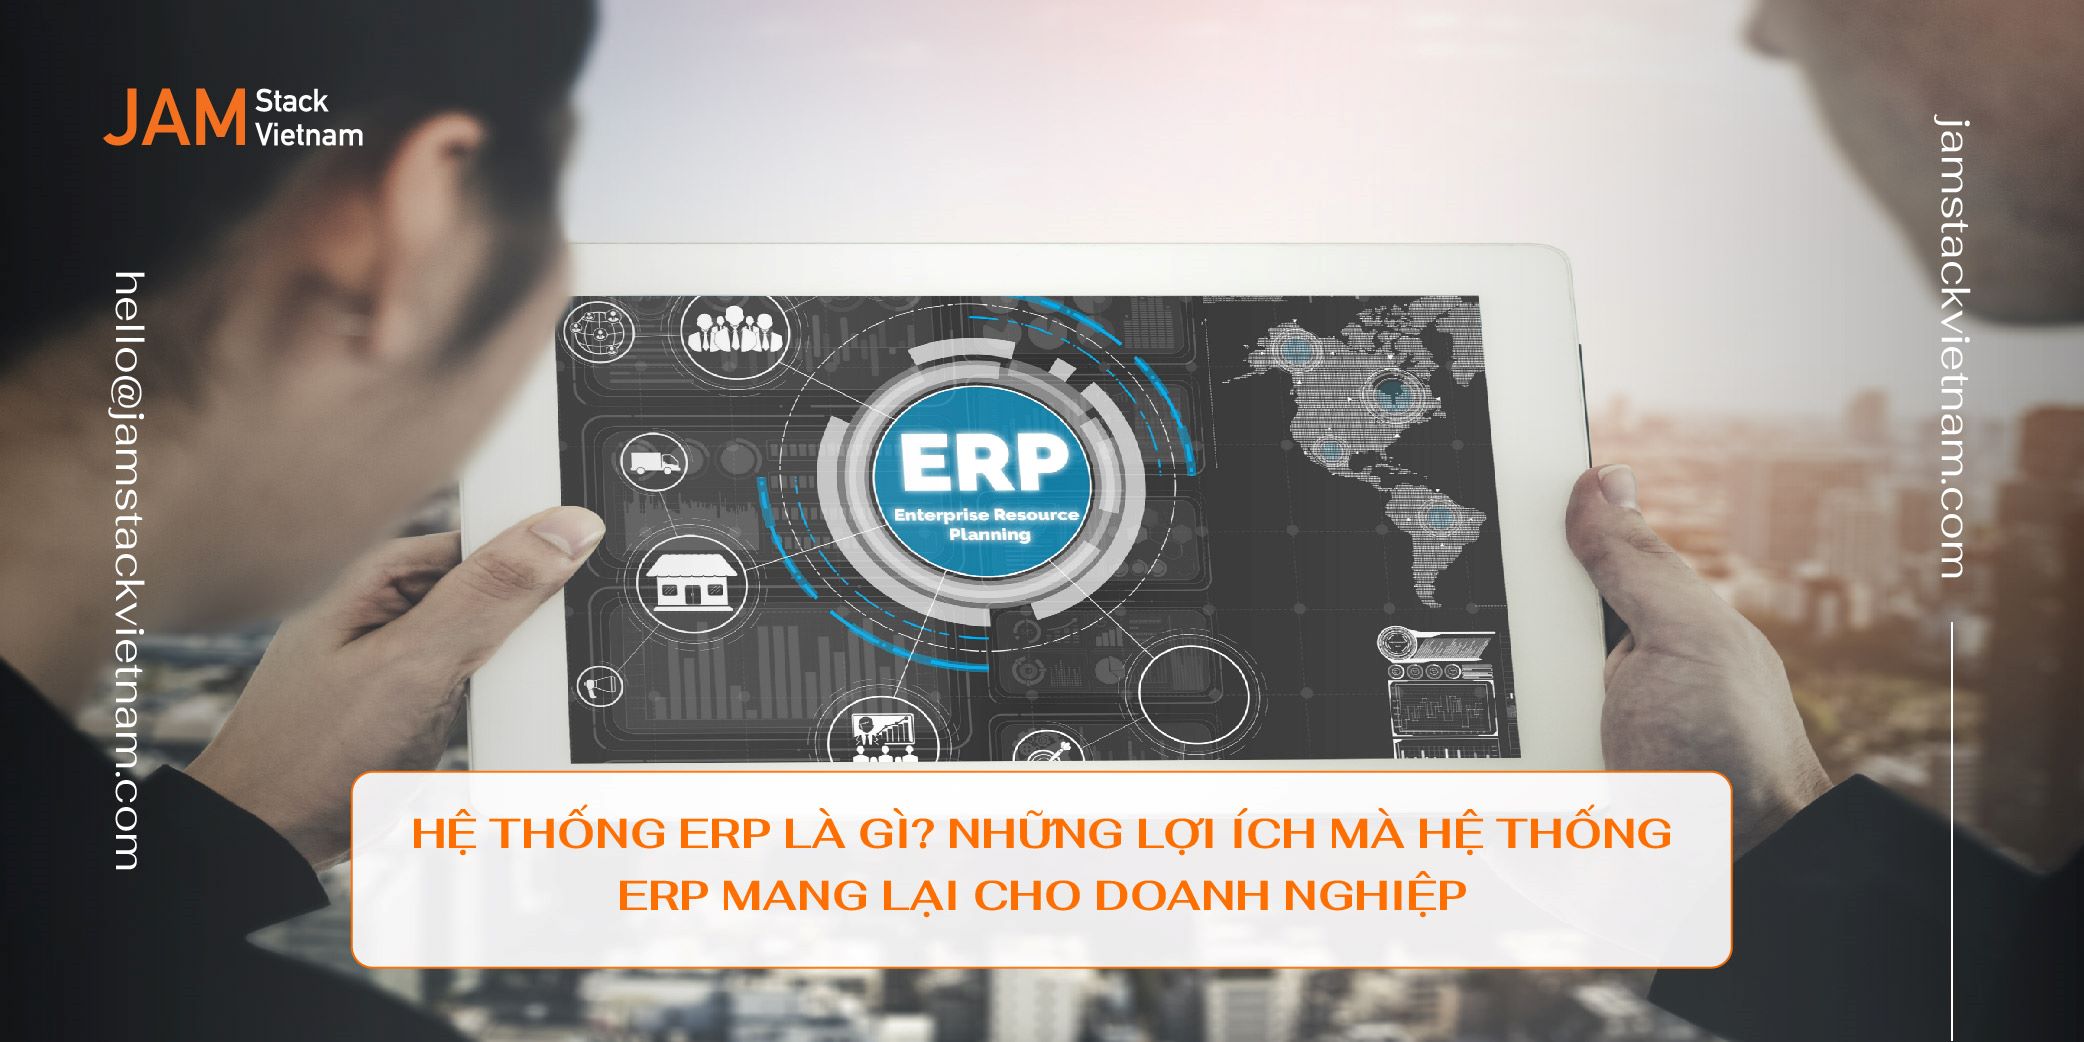 Hệ thống ERP là gì? Những lợi ích mà hệ thống ERP mang lại cho doanh nghiệp.